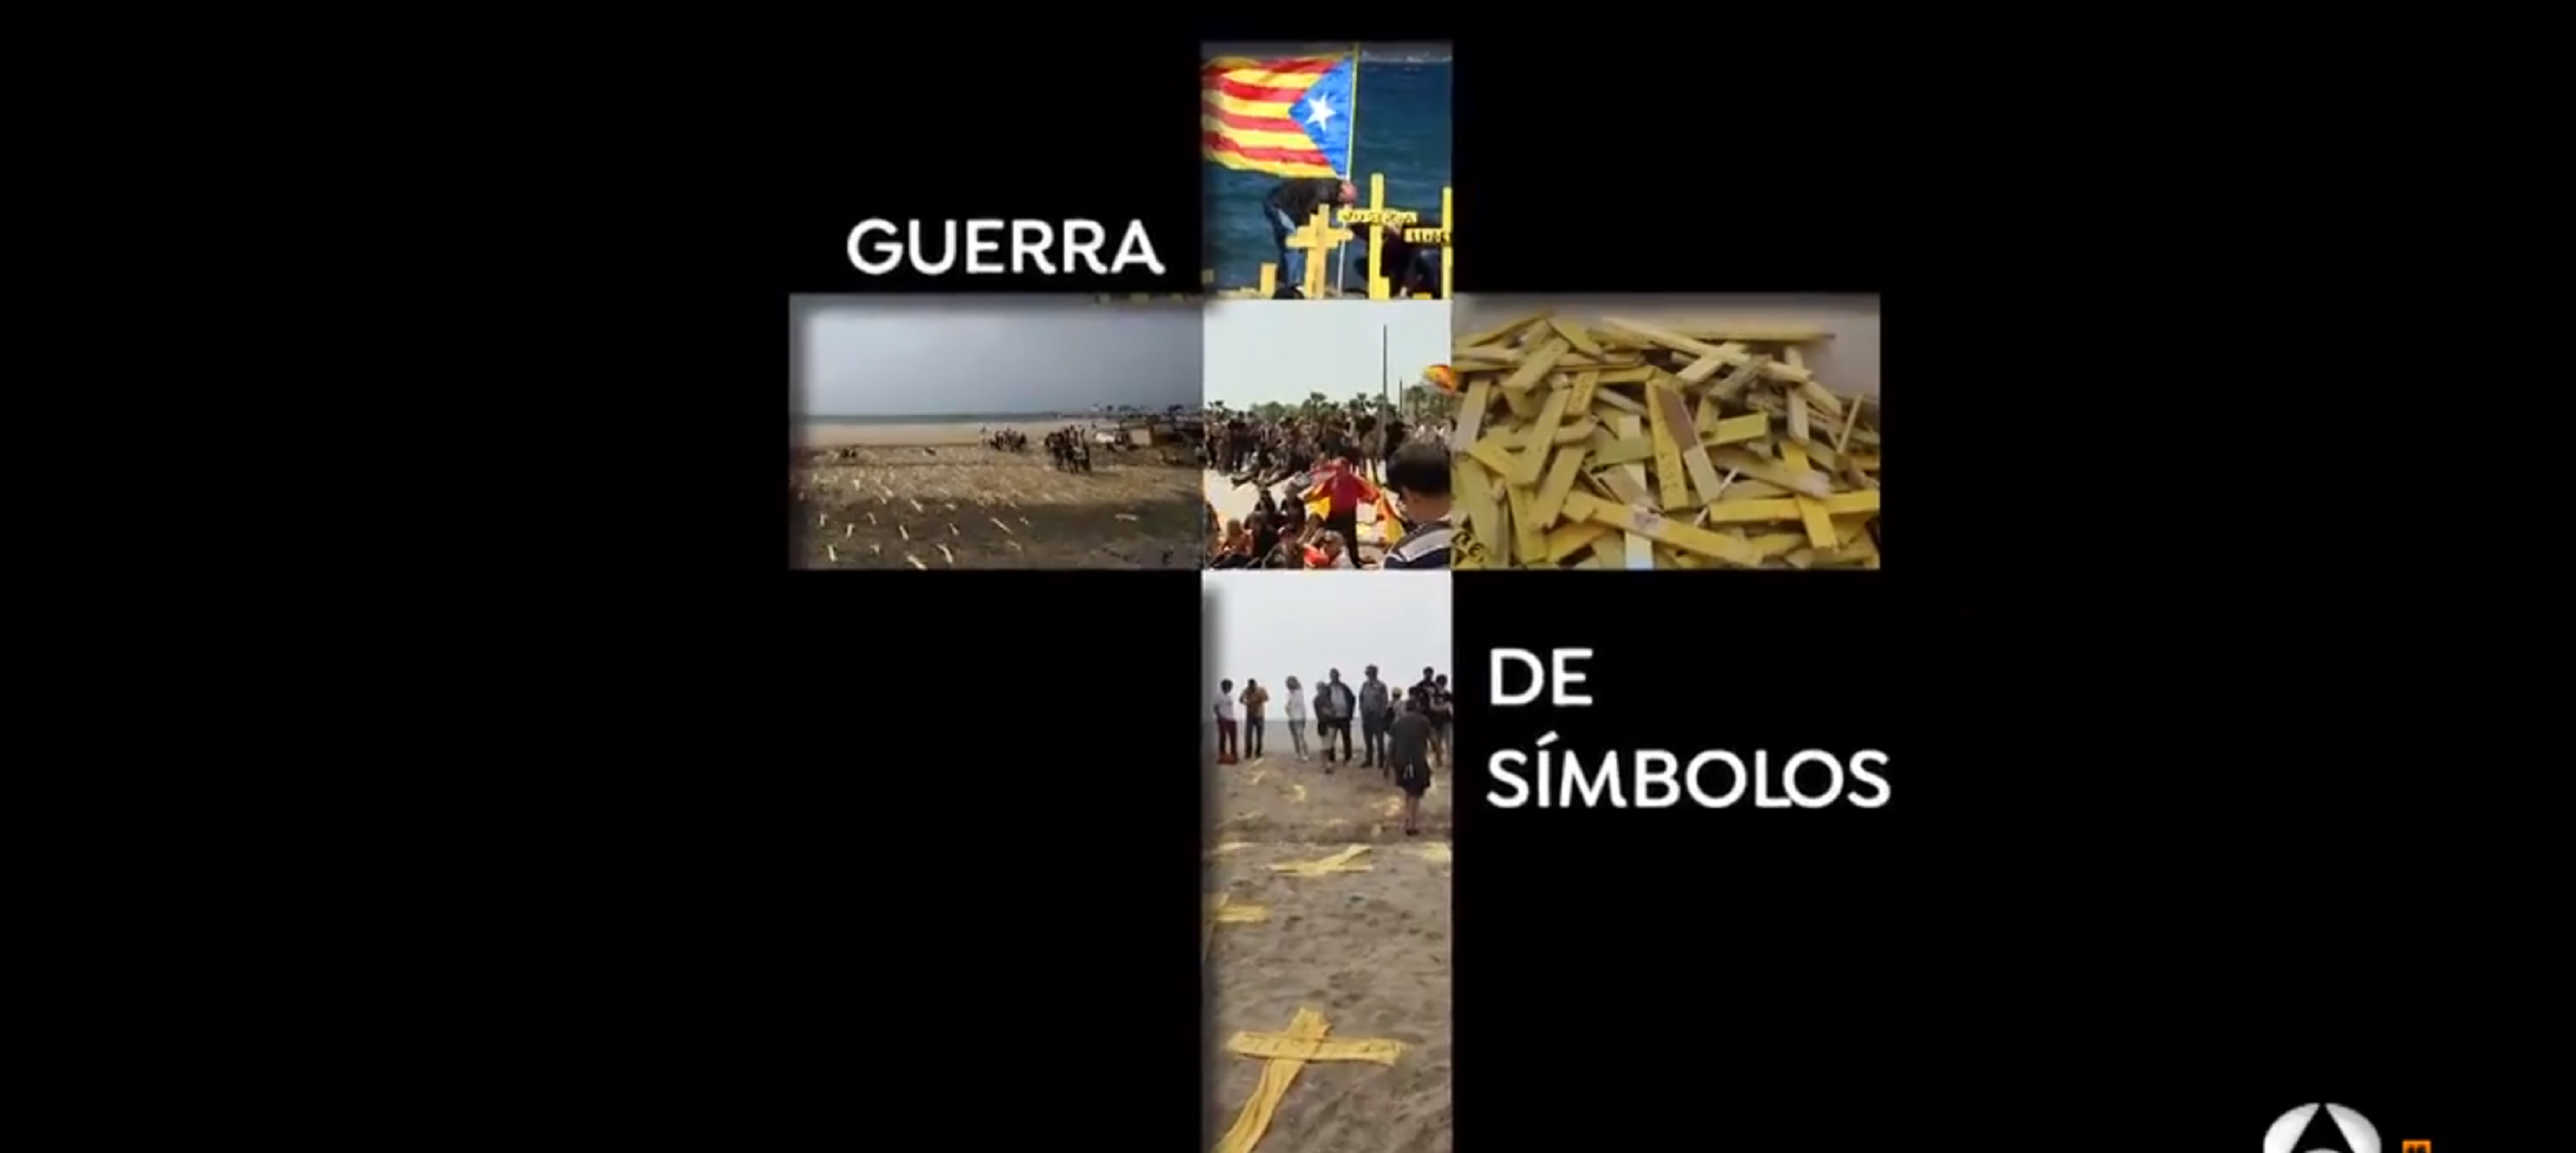 Susanna Griso se pasa al amarillo: vídeo de terror amarillista con las cruces